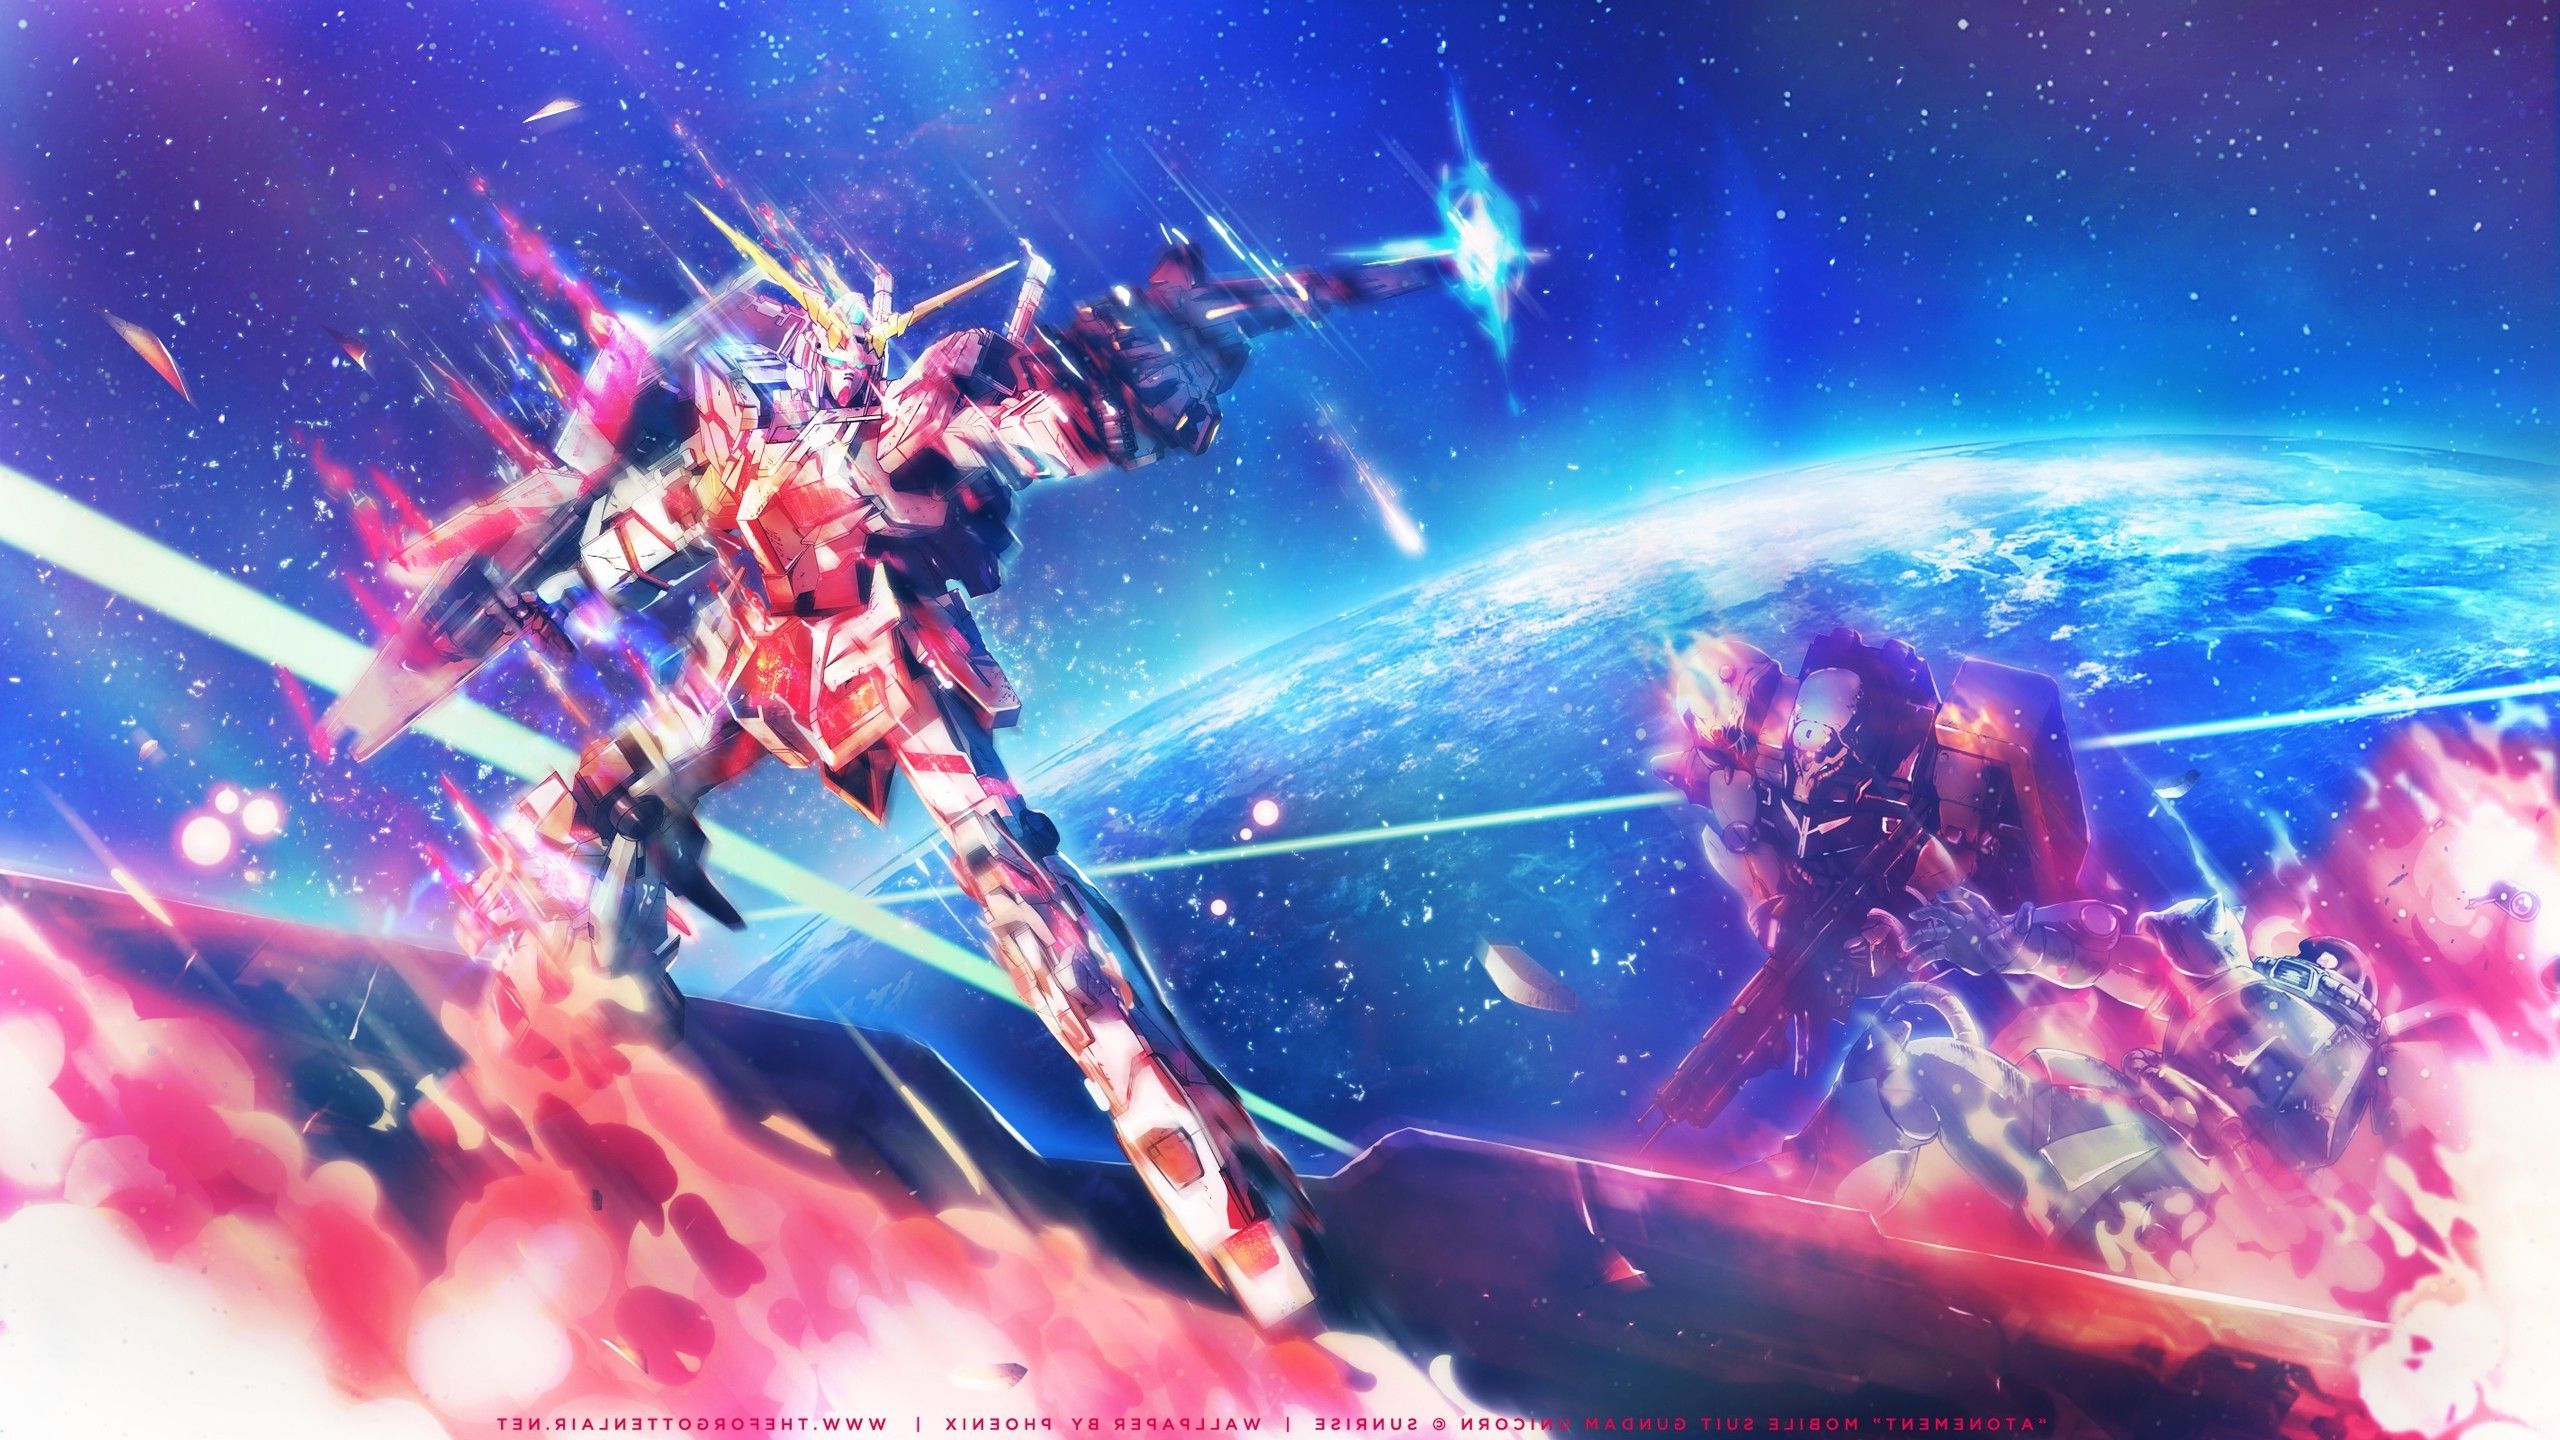 Mobile Suit Gundam Desktop Background. God Gundam Wallpaper, Gundam Unicorn Wallpaper and Gundam Wallpaper